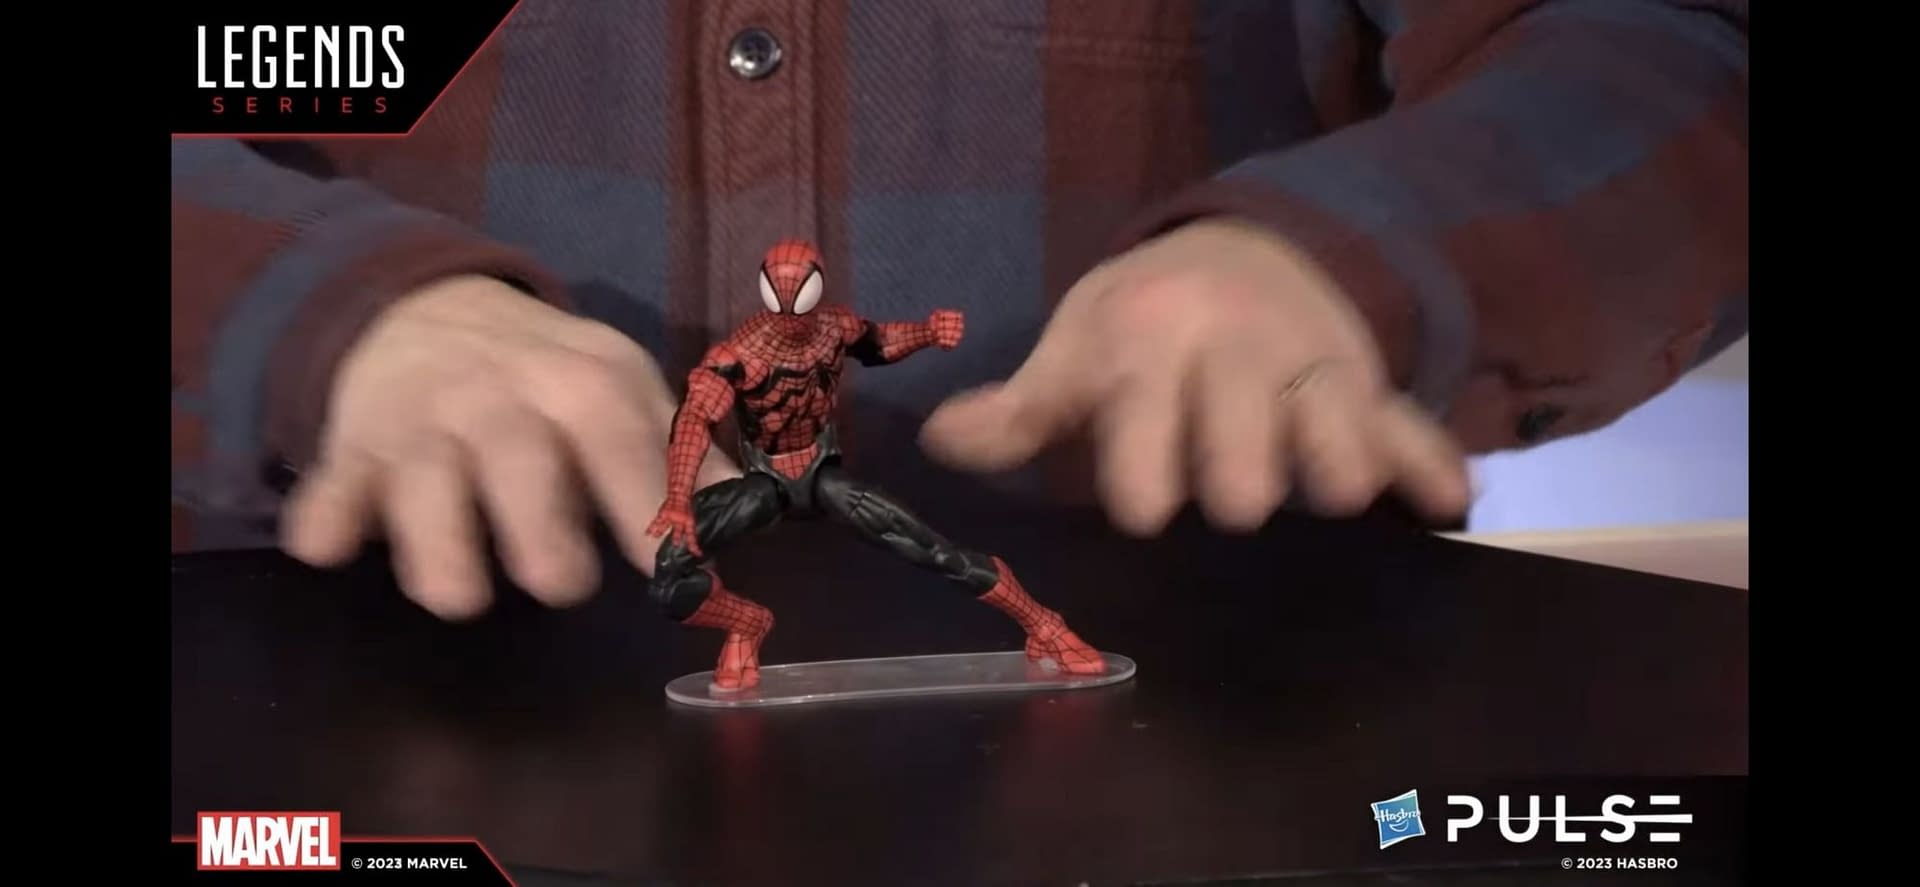 Spider-Man Receives Spectacular Wave of Marvel Legends Figures